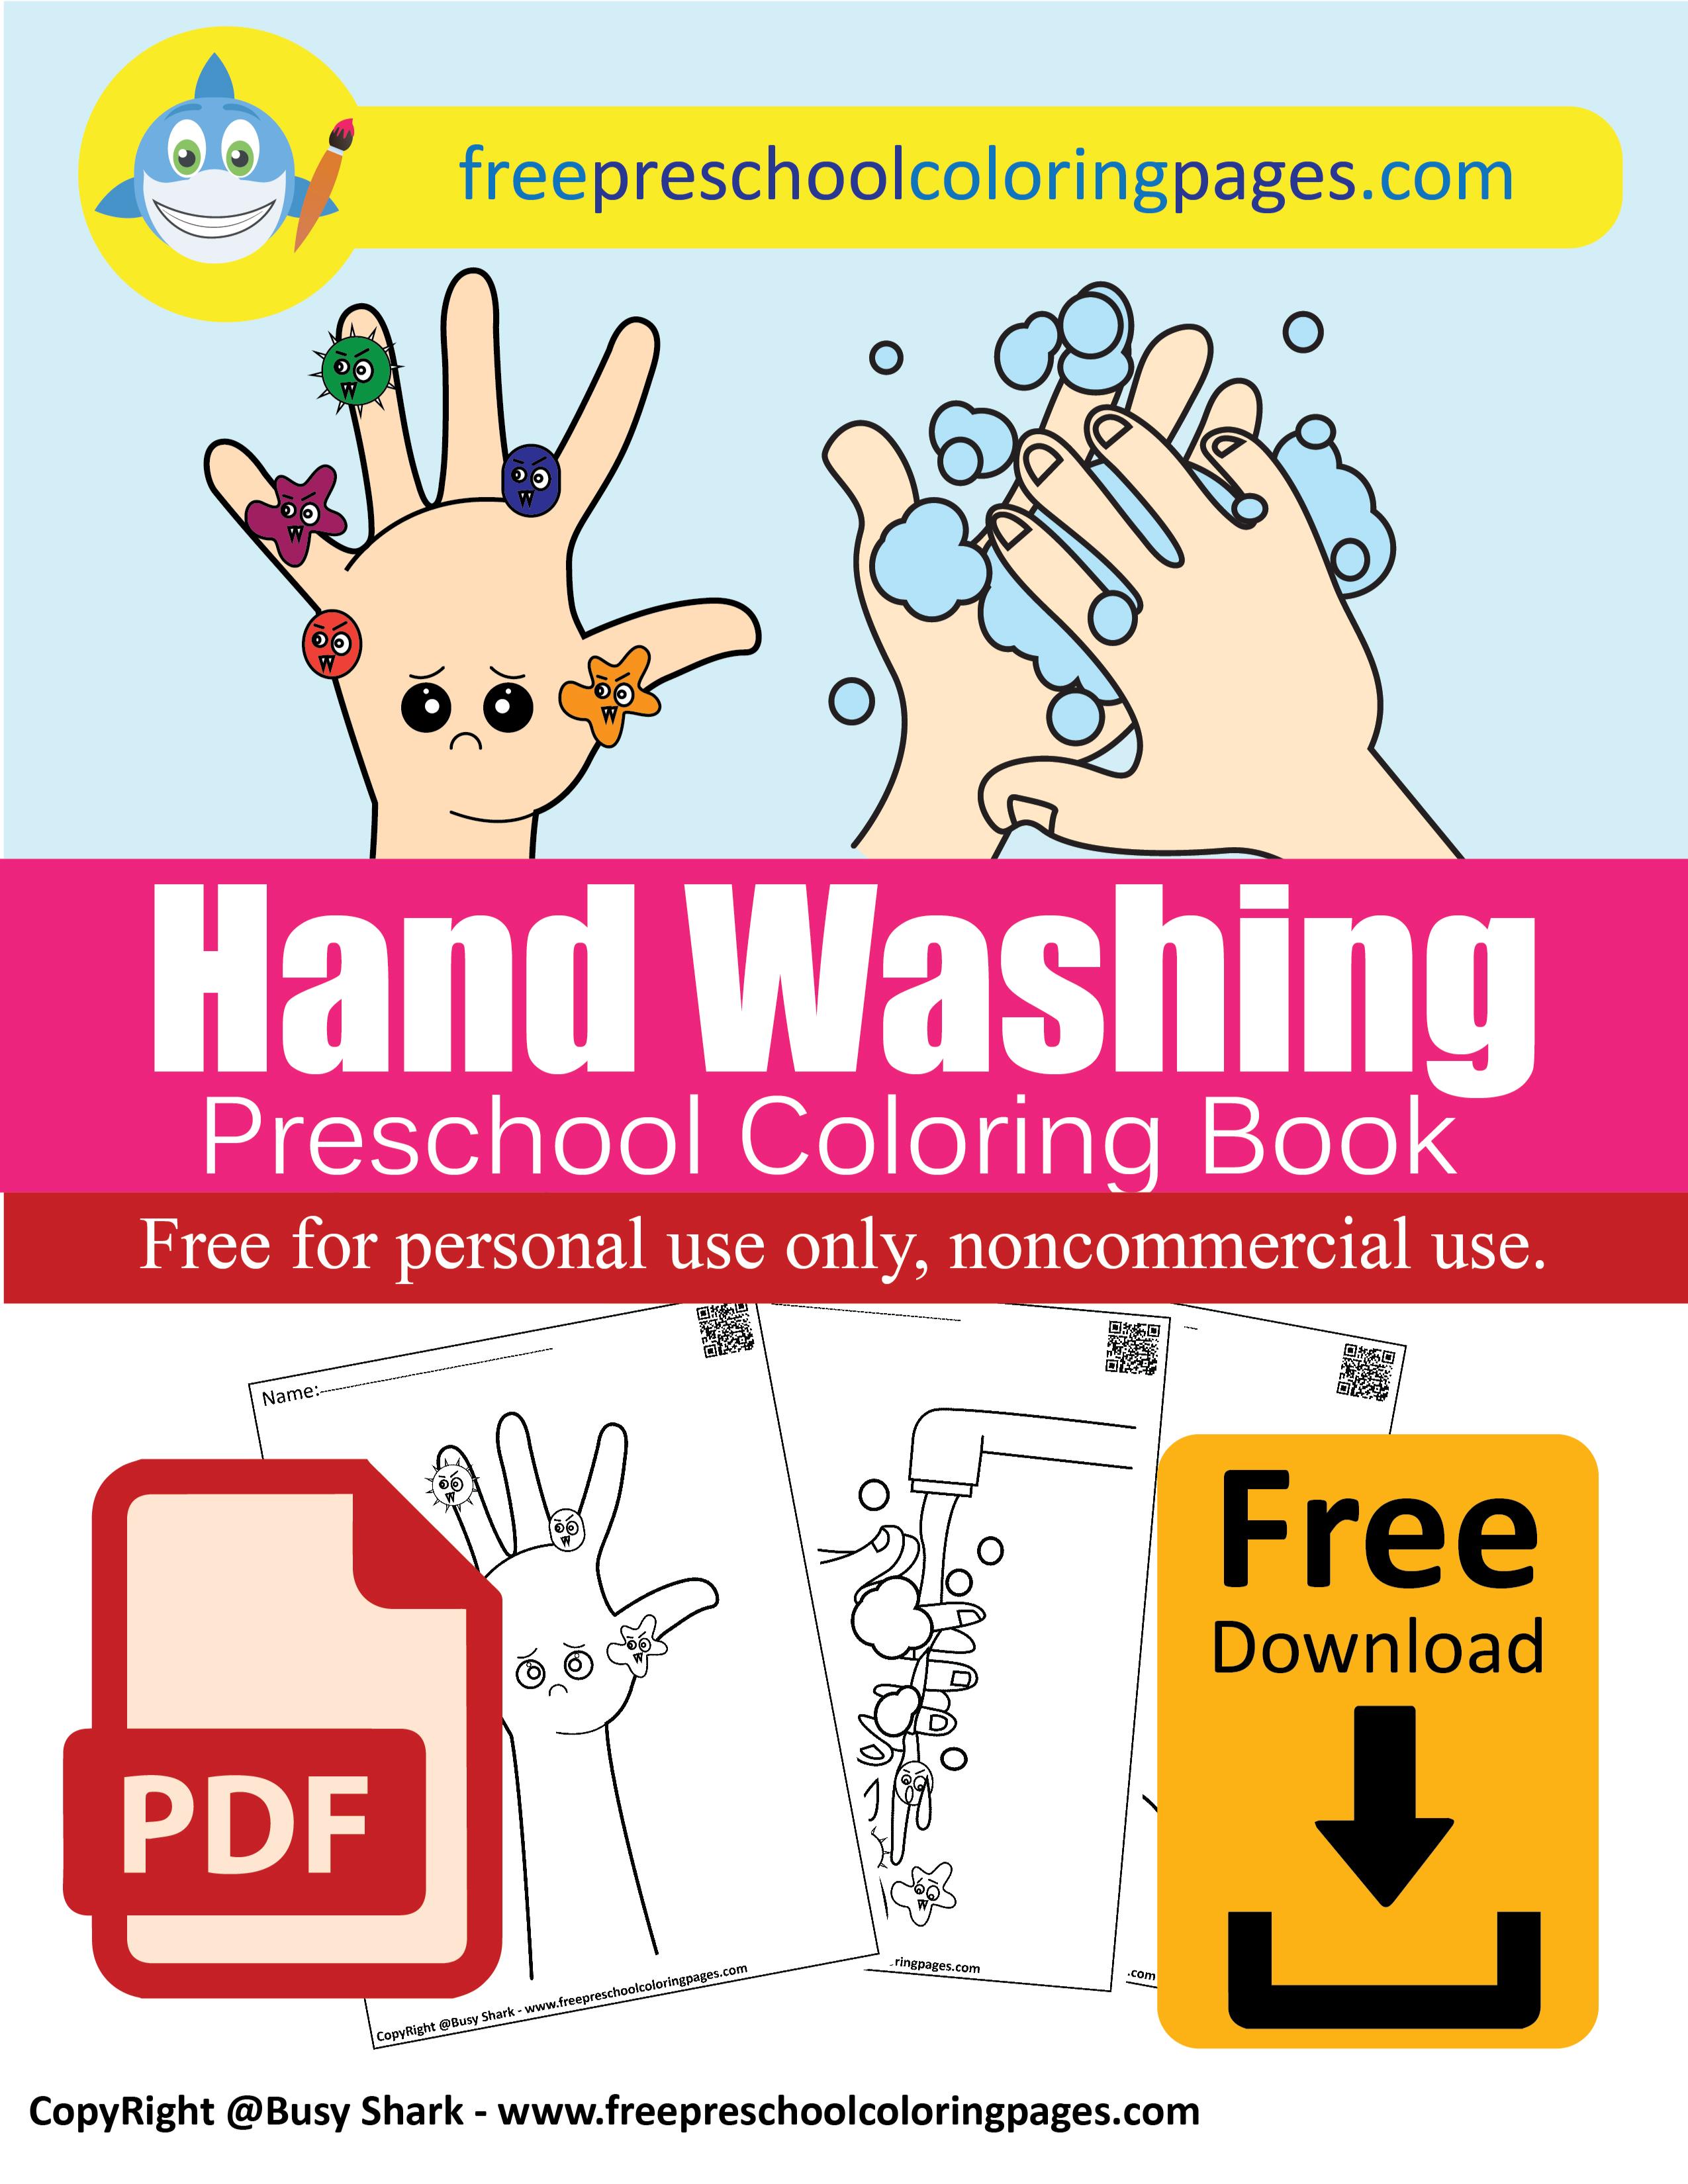 نشاط تلوين Hand Washing لتوعيةنشاط تلوين Hand Washing لتوعية الاطفال من الجراثيم الاطفال من الجراثيم